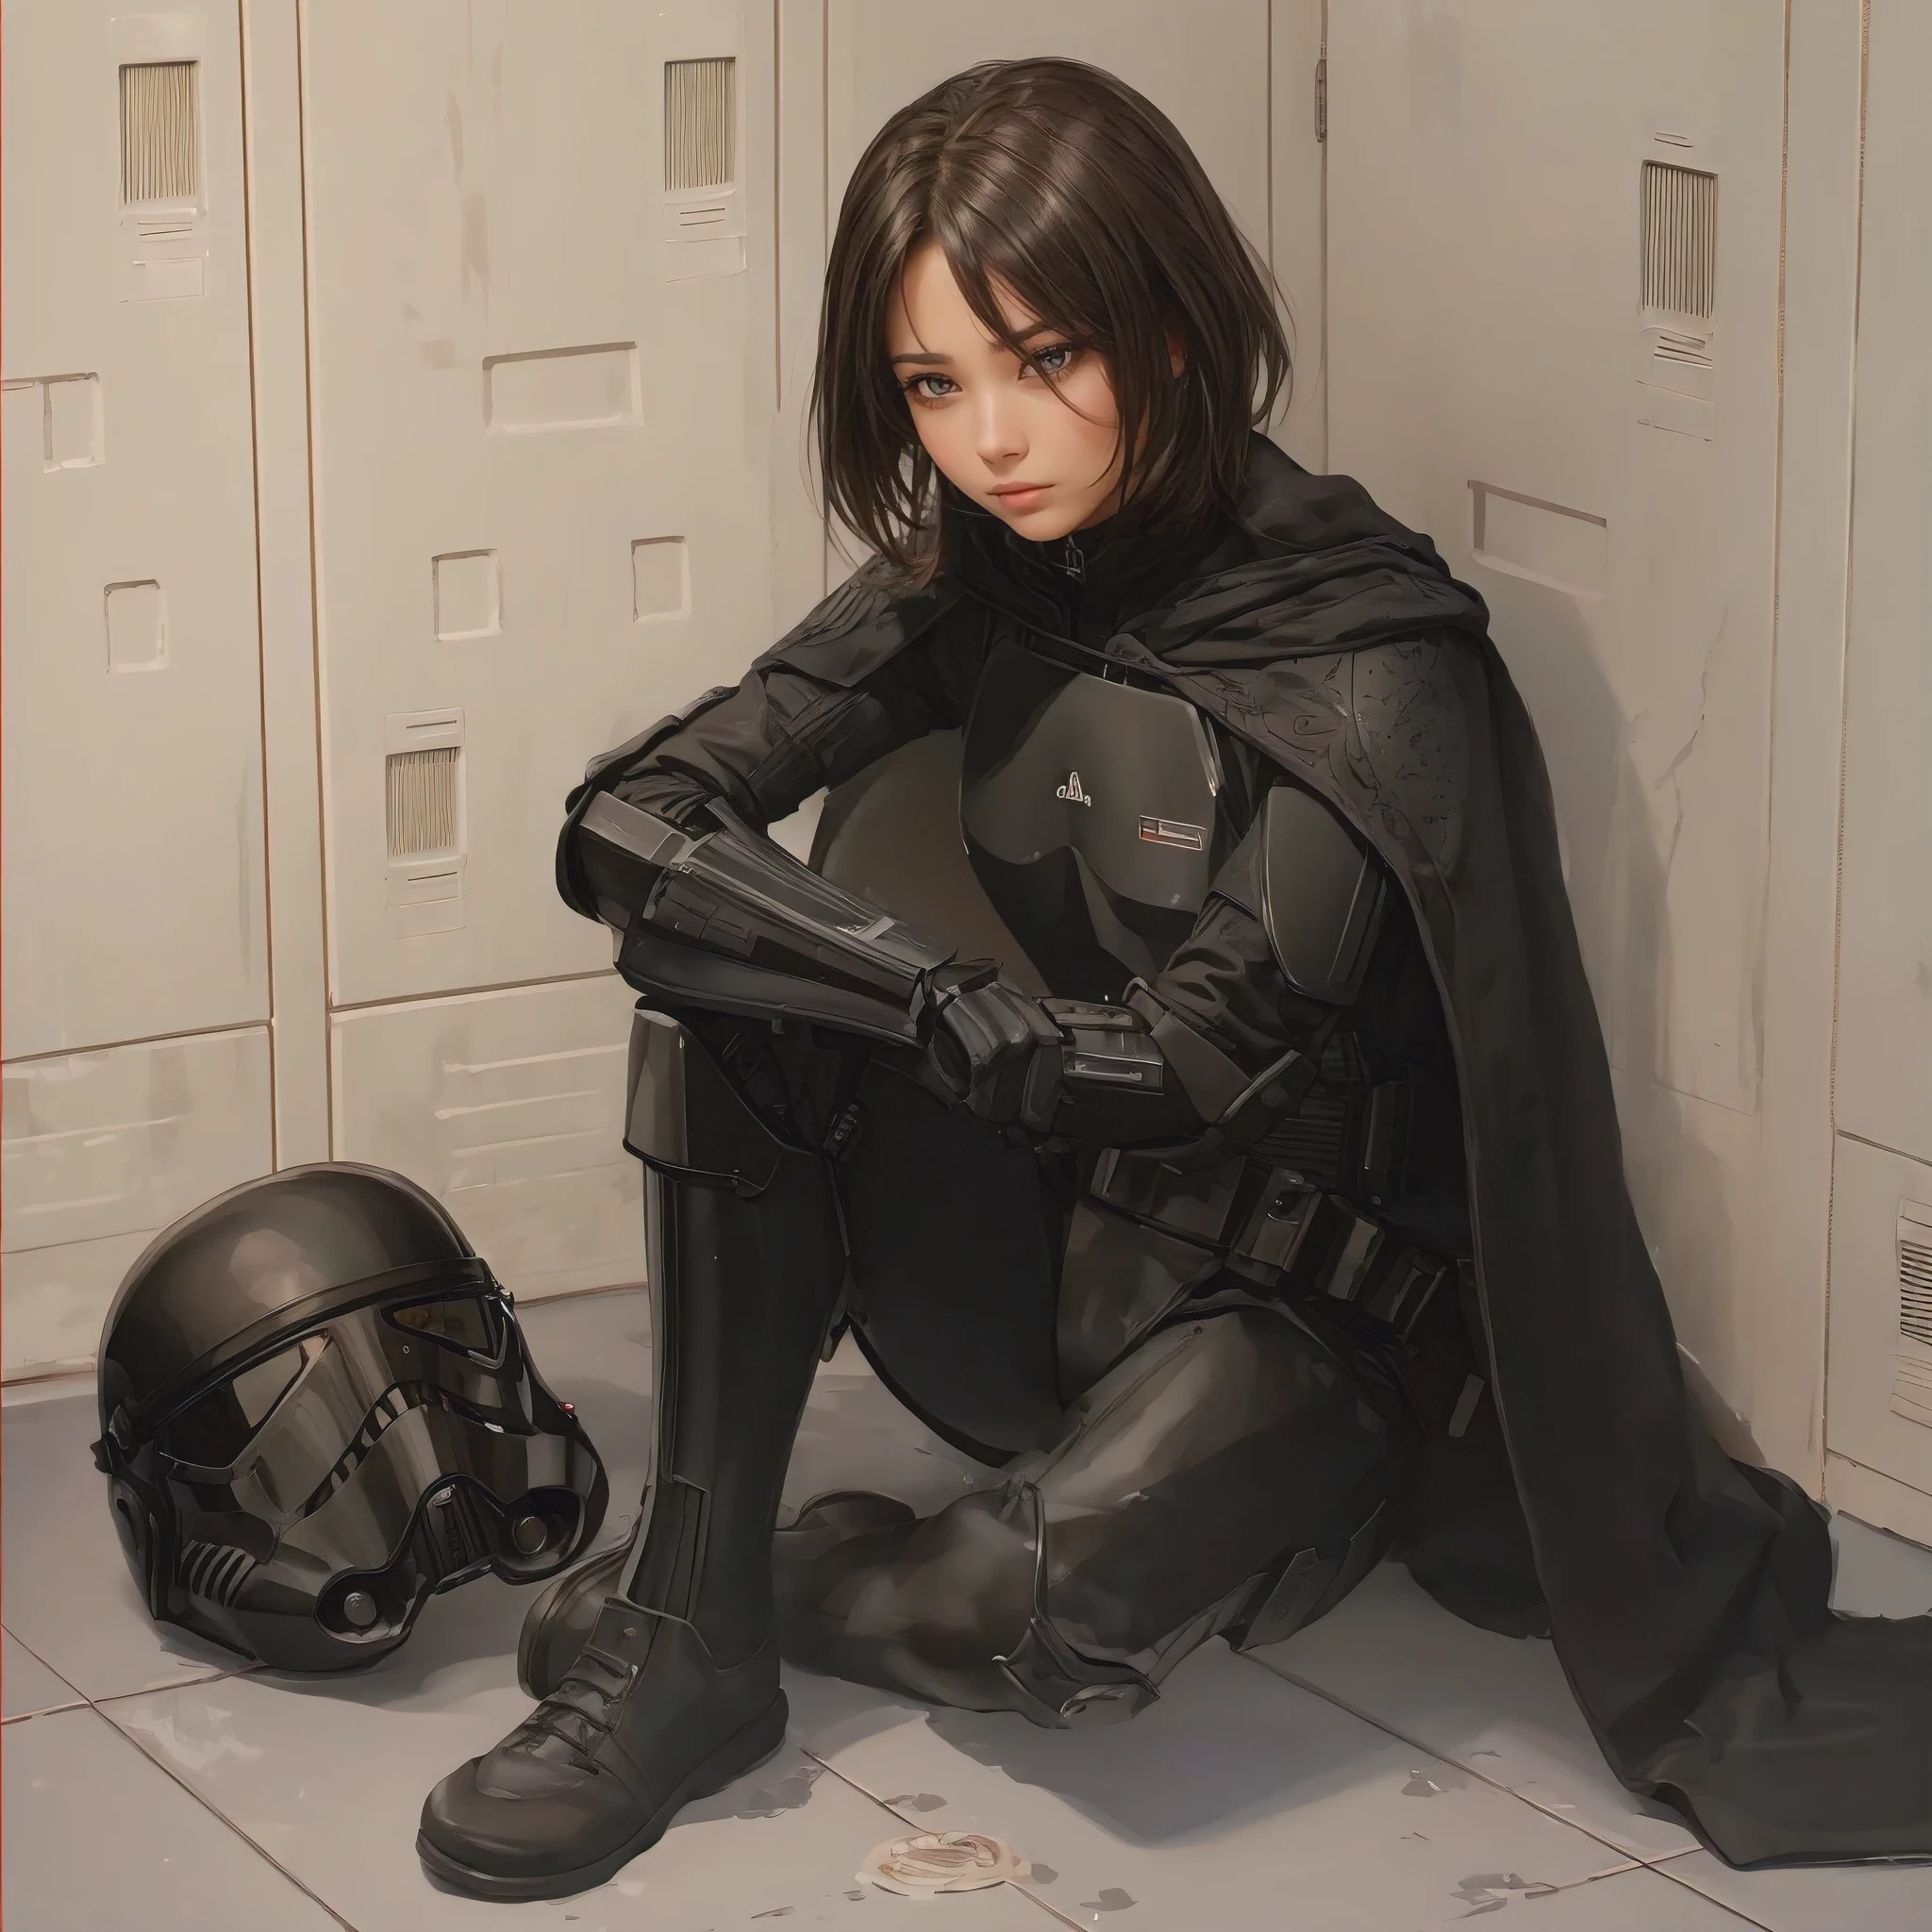 (杰作, 节拍质量, 极其详细:1.3), 女冲锋队员, 坐在军械库更衣室里, 黑色飞行员装甲, 地板上的黑色头盔, 全身, 简单的角色设计